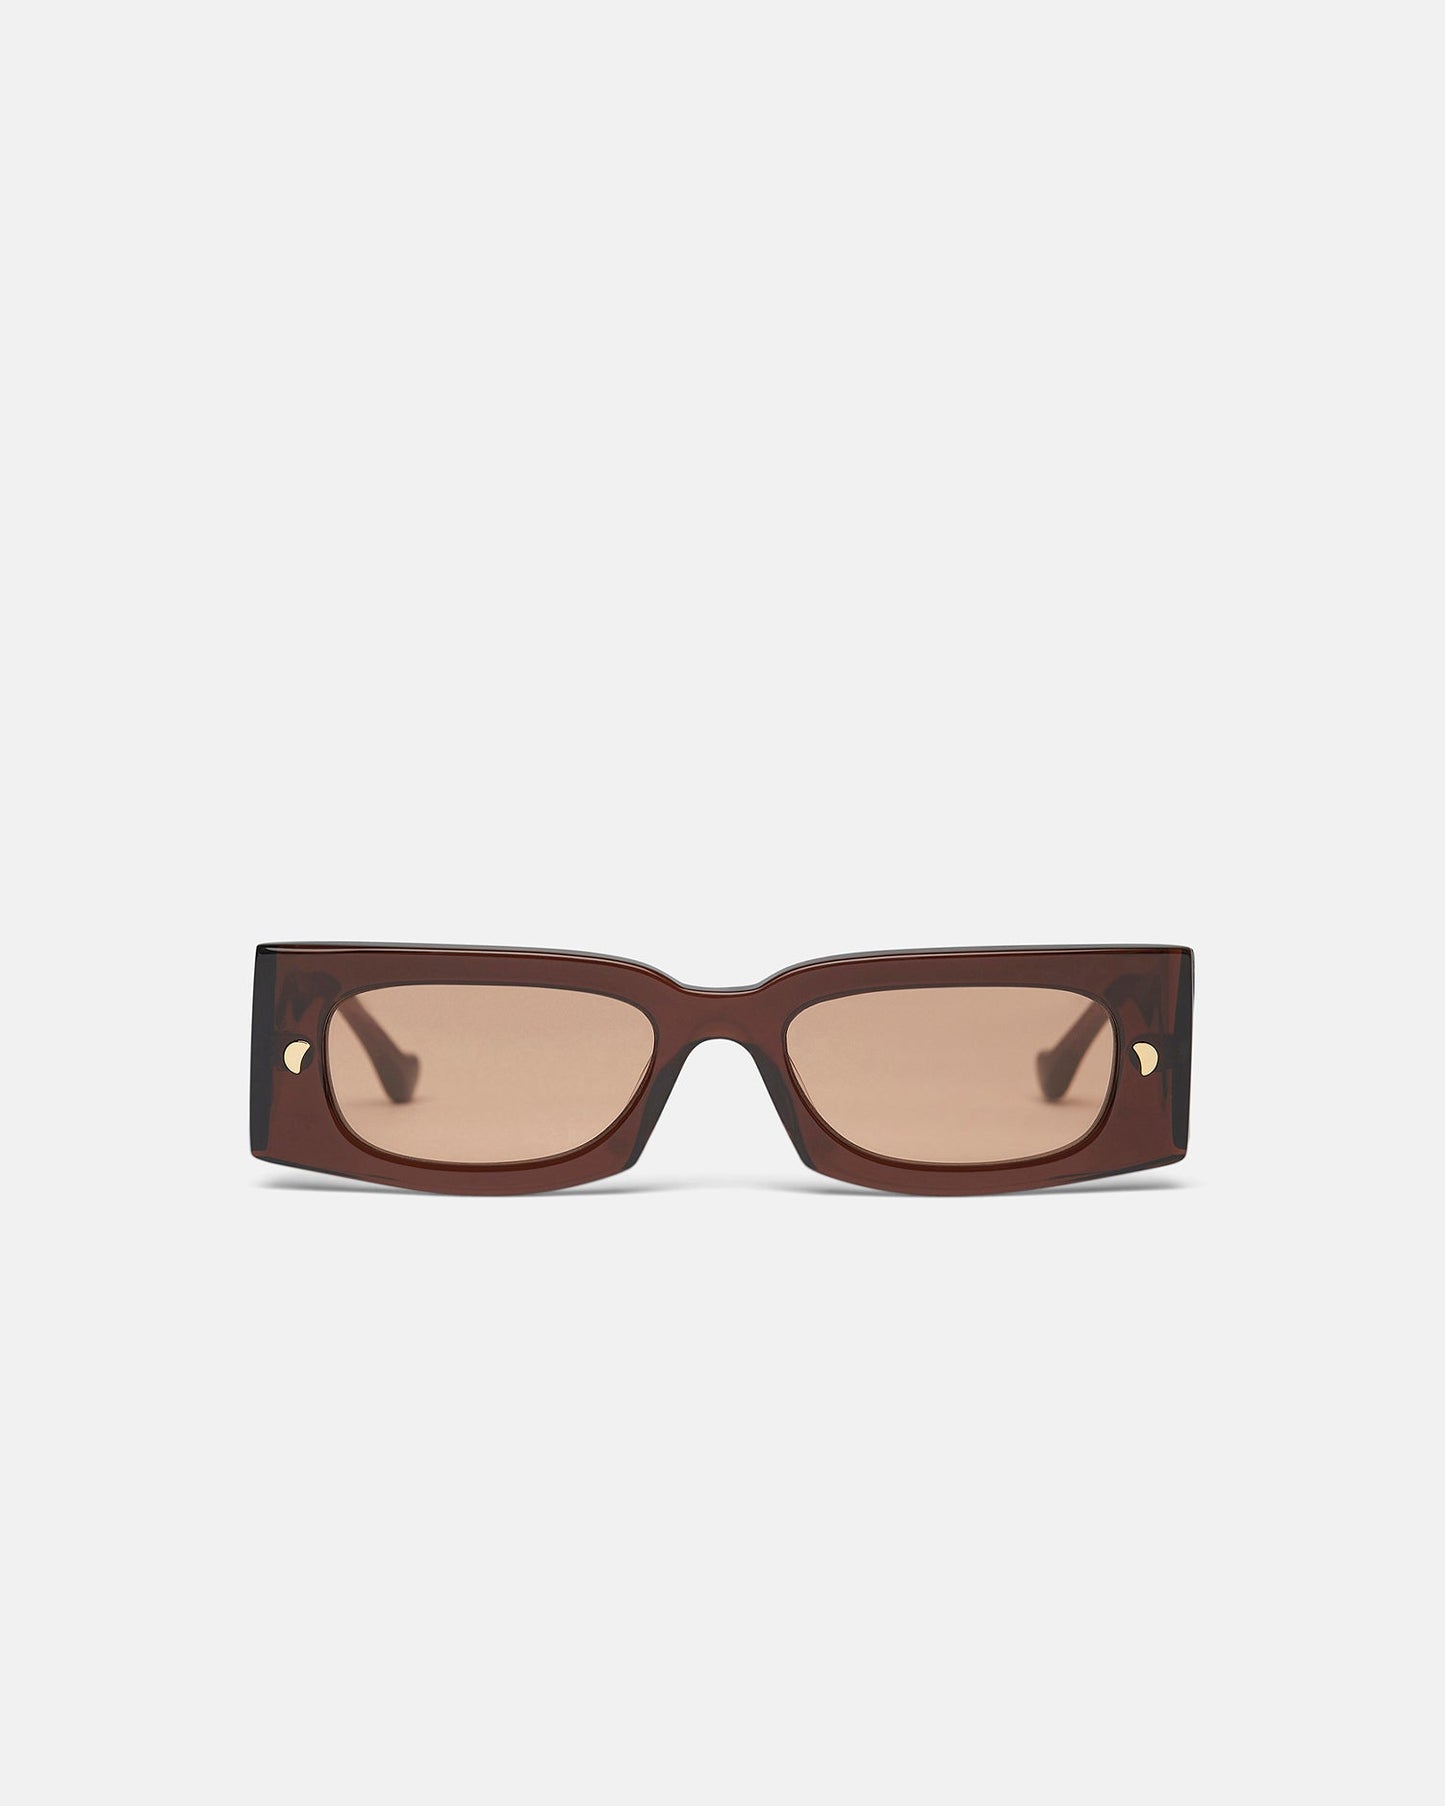 Fenna - Archive Bio-Plastic Sunglasses - Brown